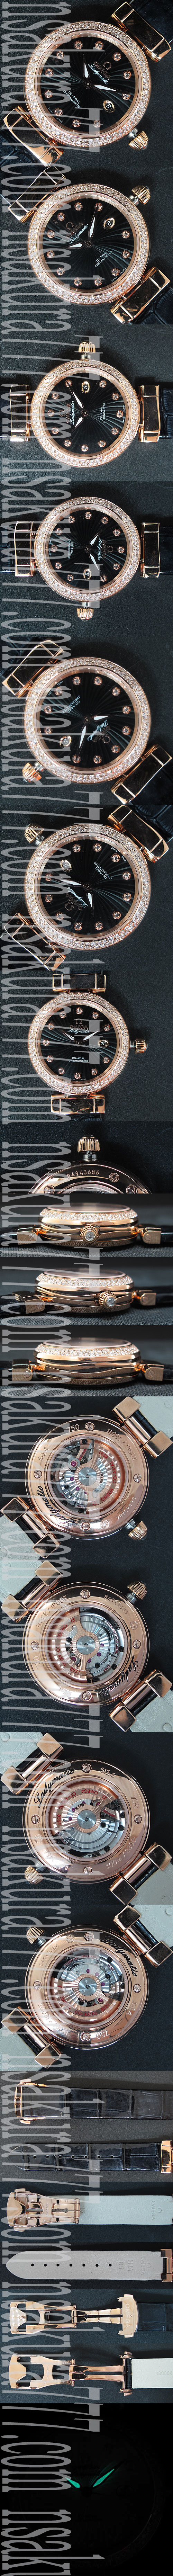 腕時計提携工房オメガ DE VILLEレディマティック(ピンクゴールド素材 ベゼル全面ダイヤモンド)